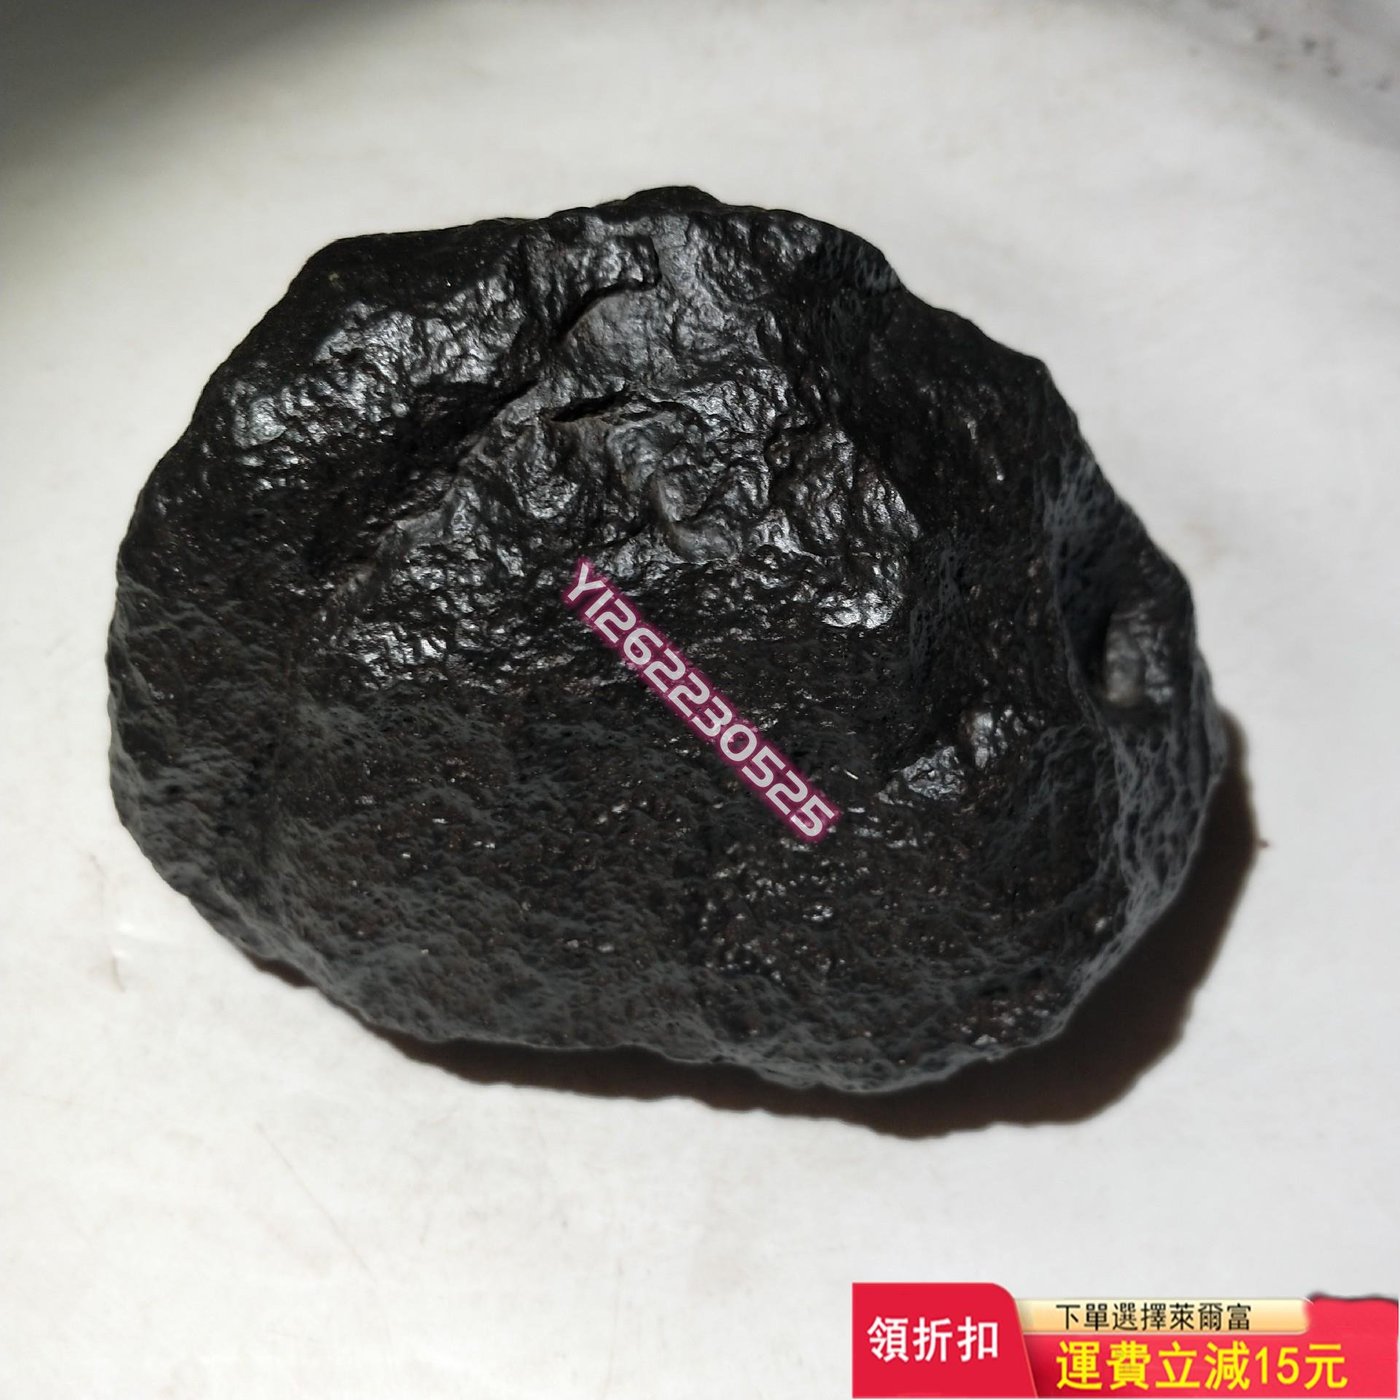 碳質球粒石鐵隕石重量1481克天然原石小物件雅石擺件【匠人收藏】13501 